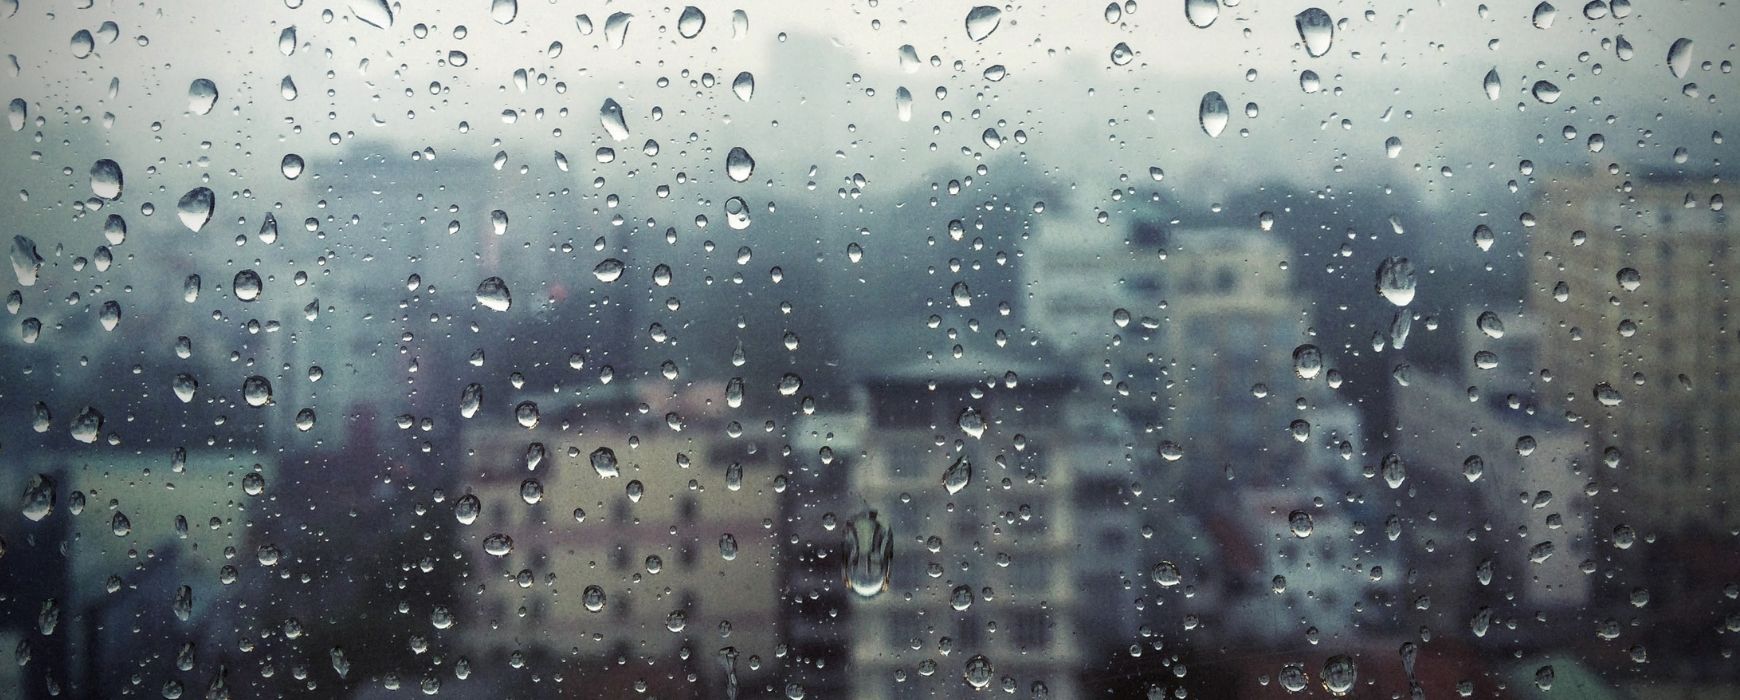 Καιρός σήμερα: Έρχονται βροχές και καταιγίδες (Video)